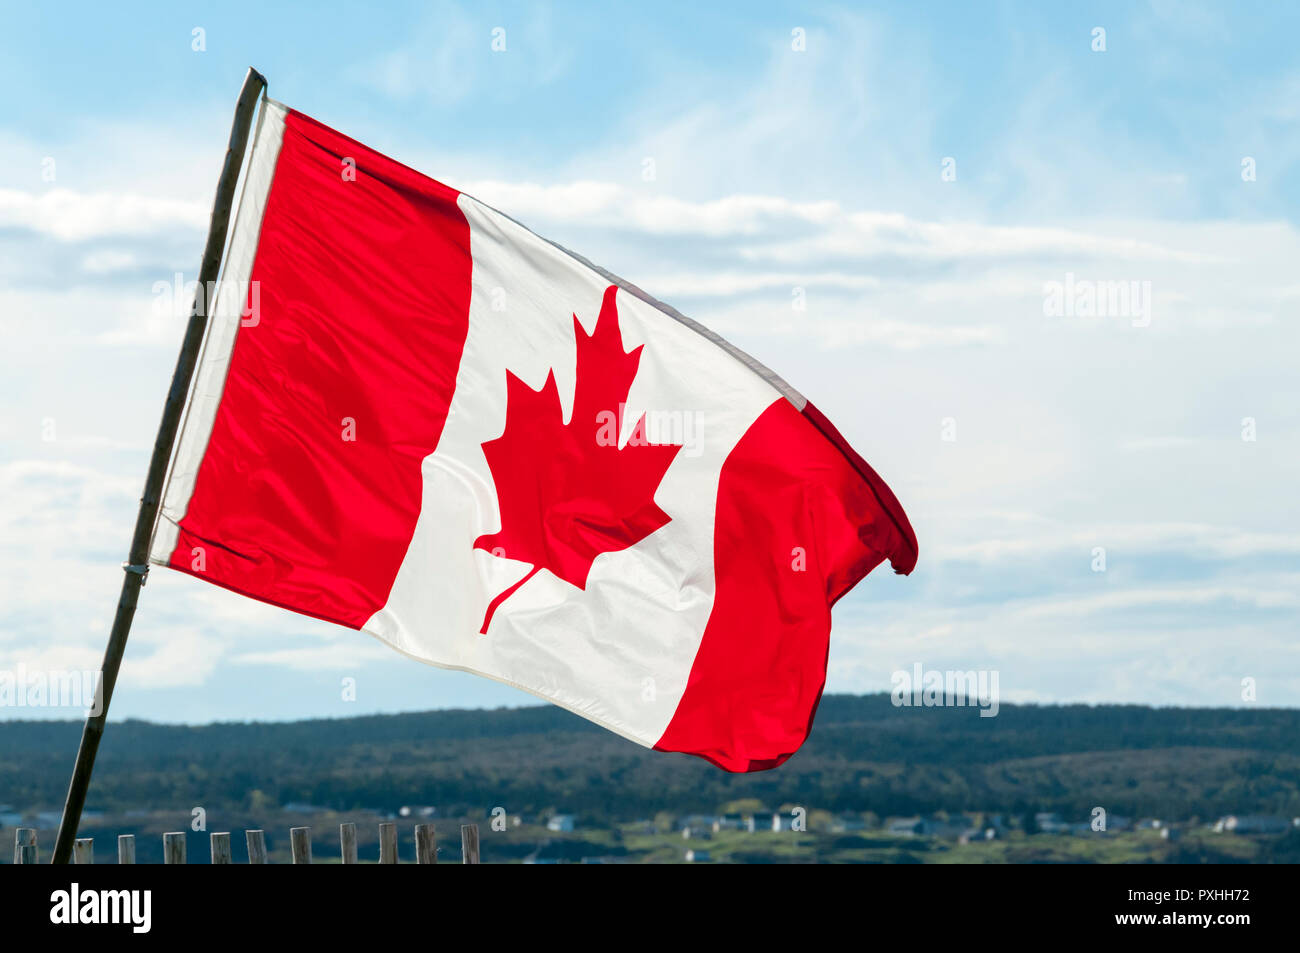 Le drapeau du Canada, drapeau canadien, la feuille d'érable ou de l'unifolié. Banque D'Images